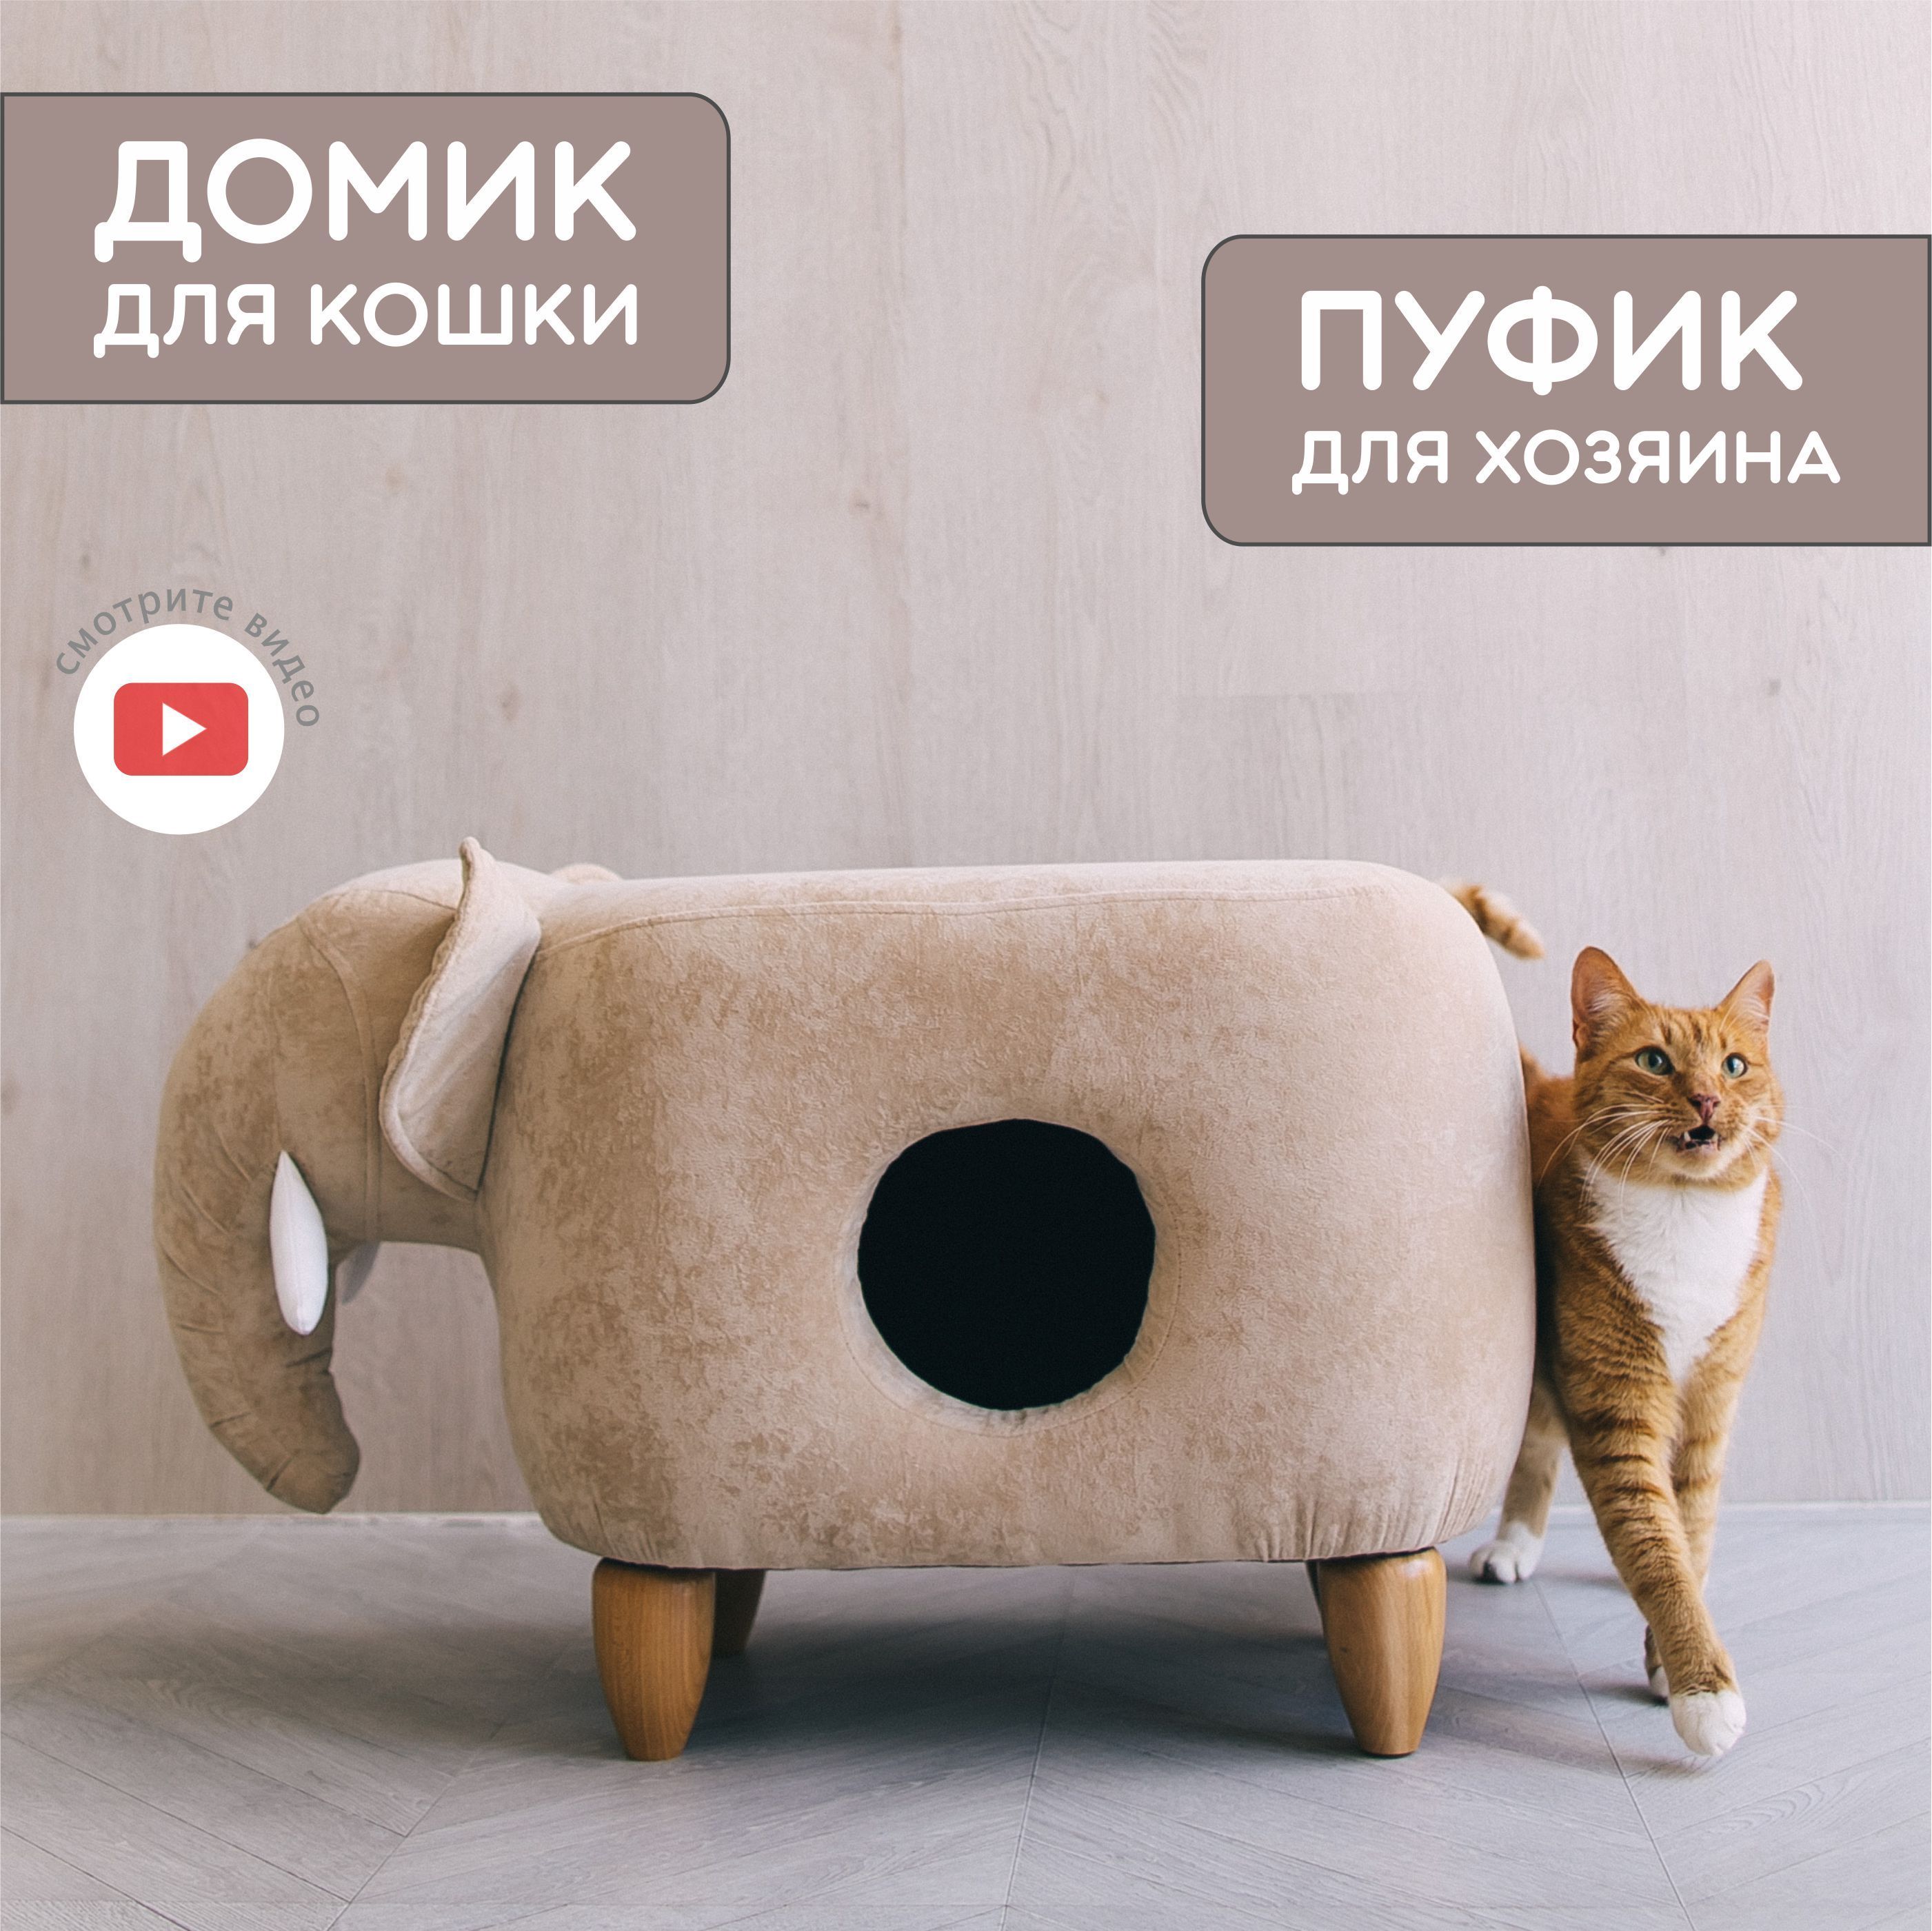 Домик для кошки своими руками Эксплуатация Видео для настроения | creative-owl | Дзен